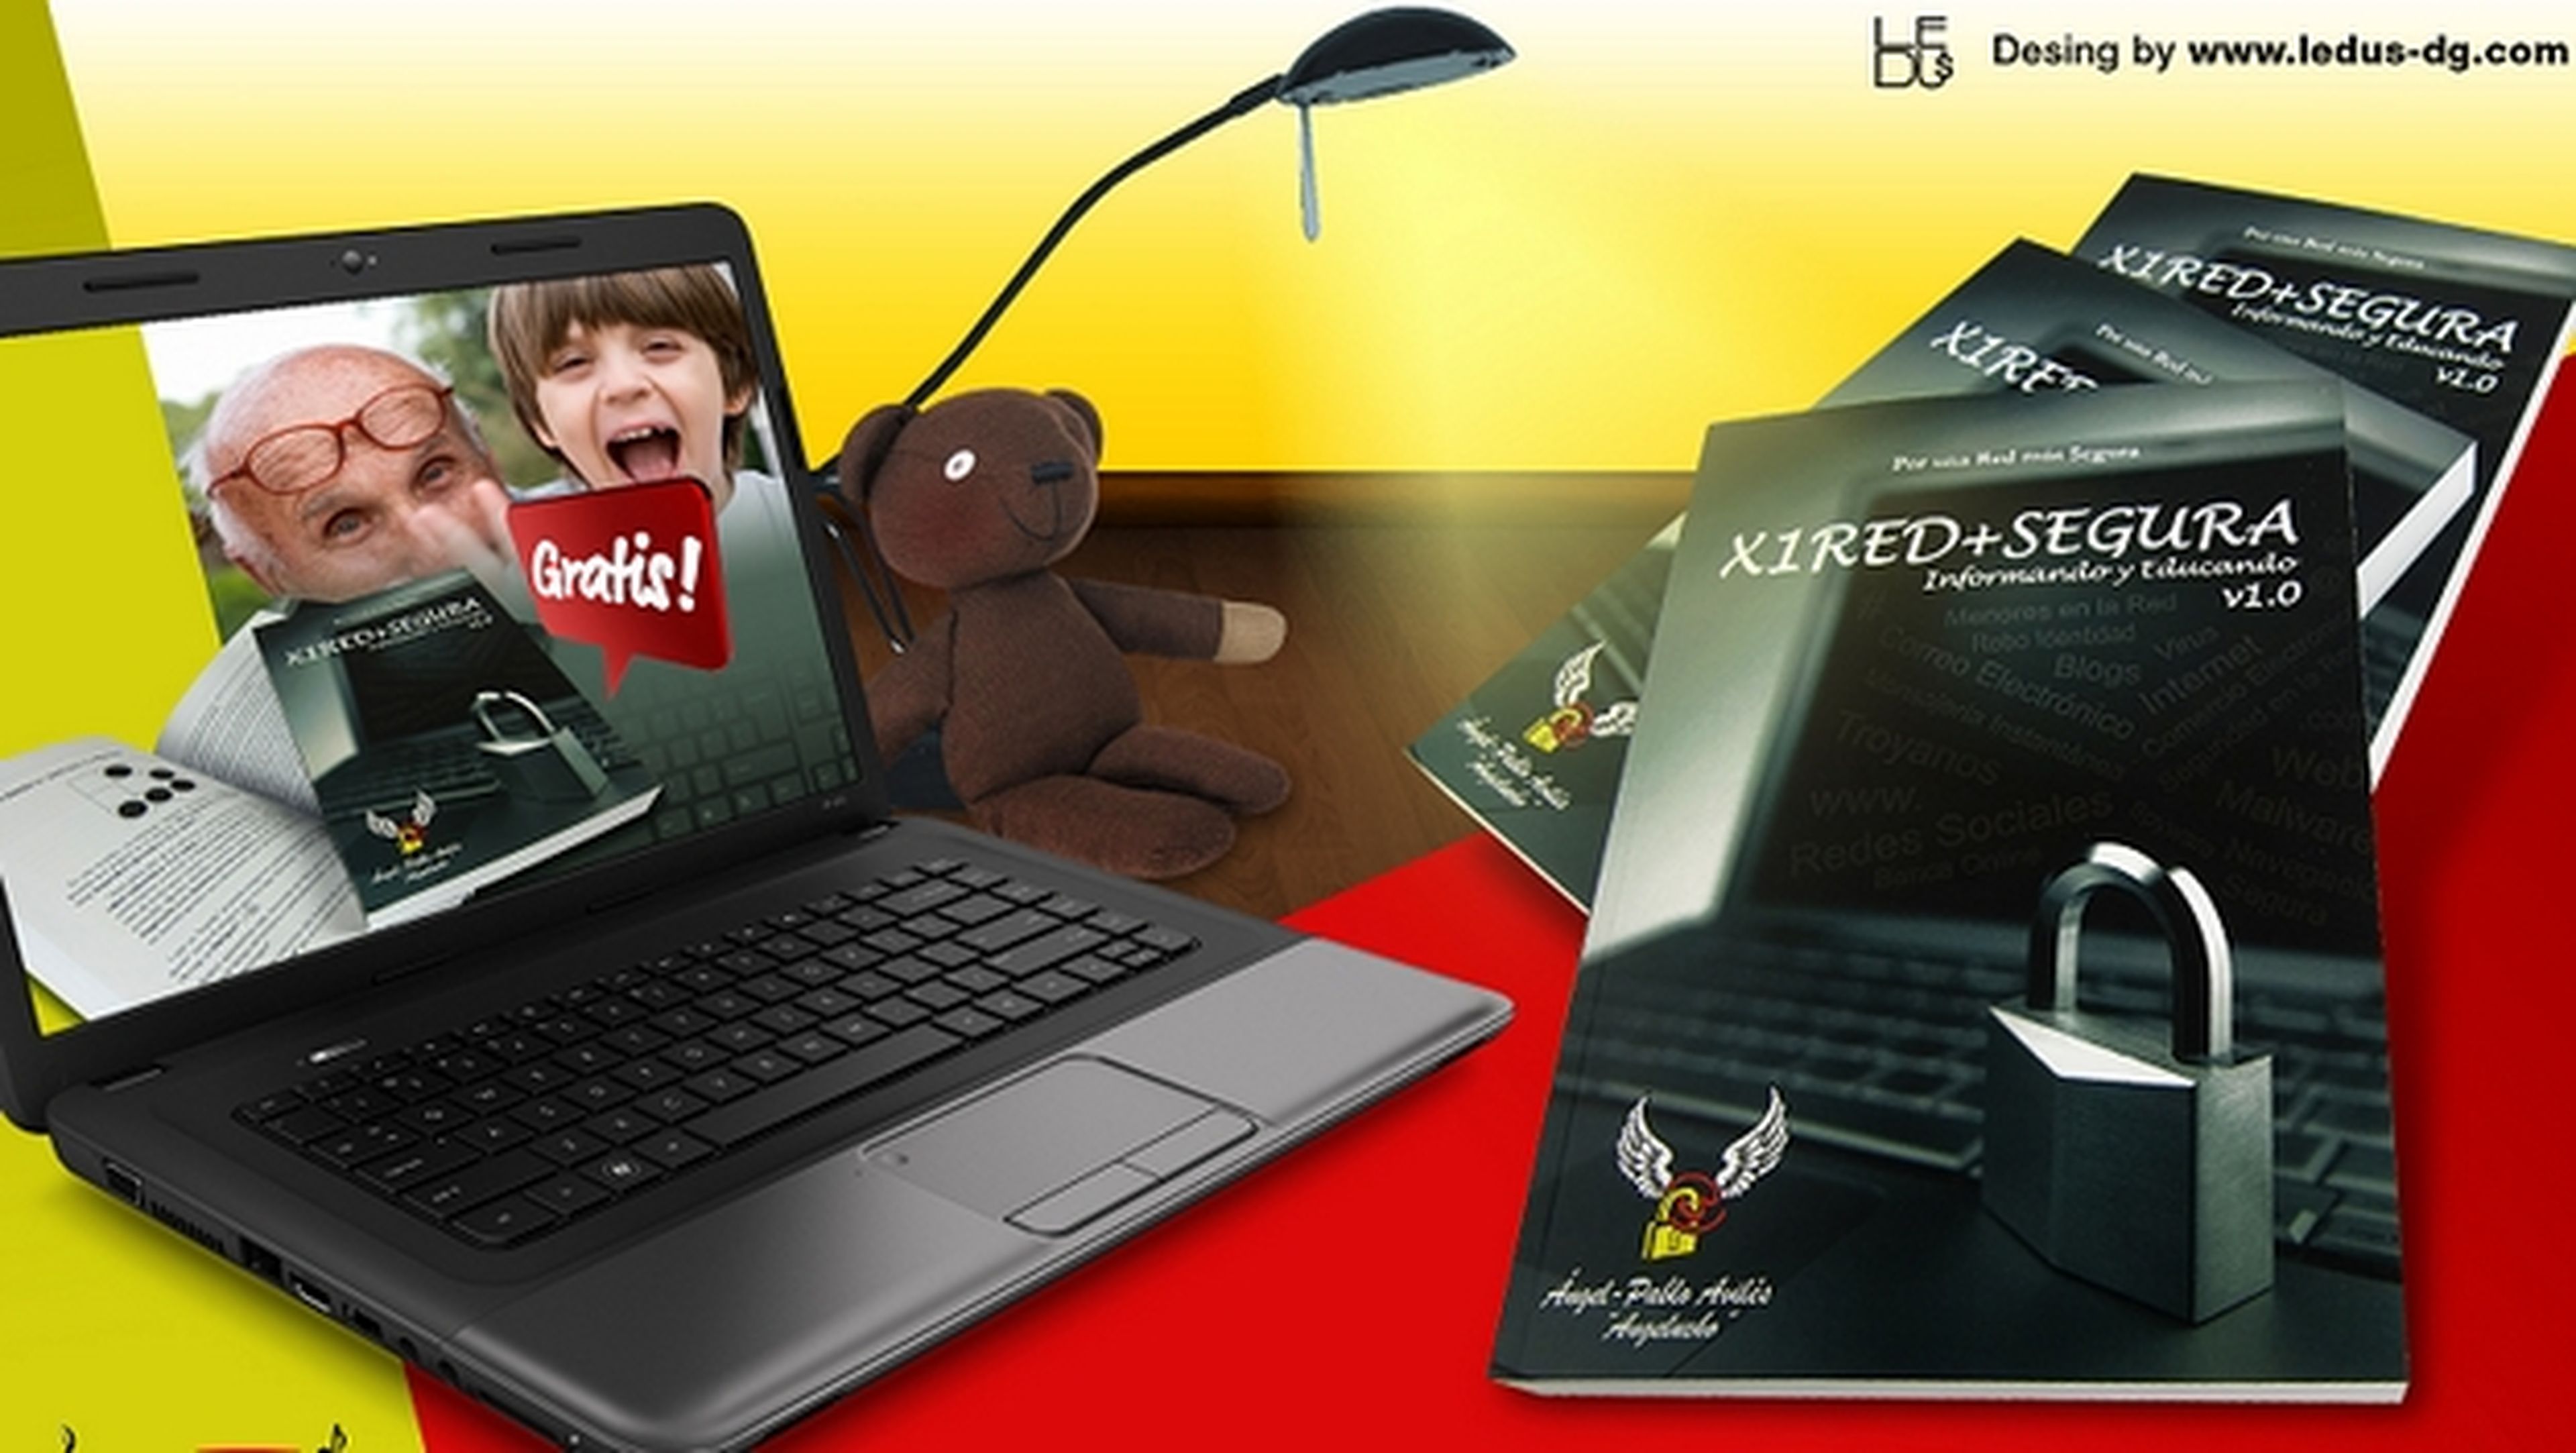 Descarga gratis el libro de seguridad en la Red X1Red+Segura Informando y Educando, de Angel Pablo Avilés, Angelucho.